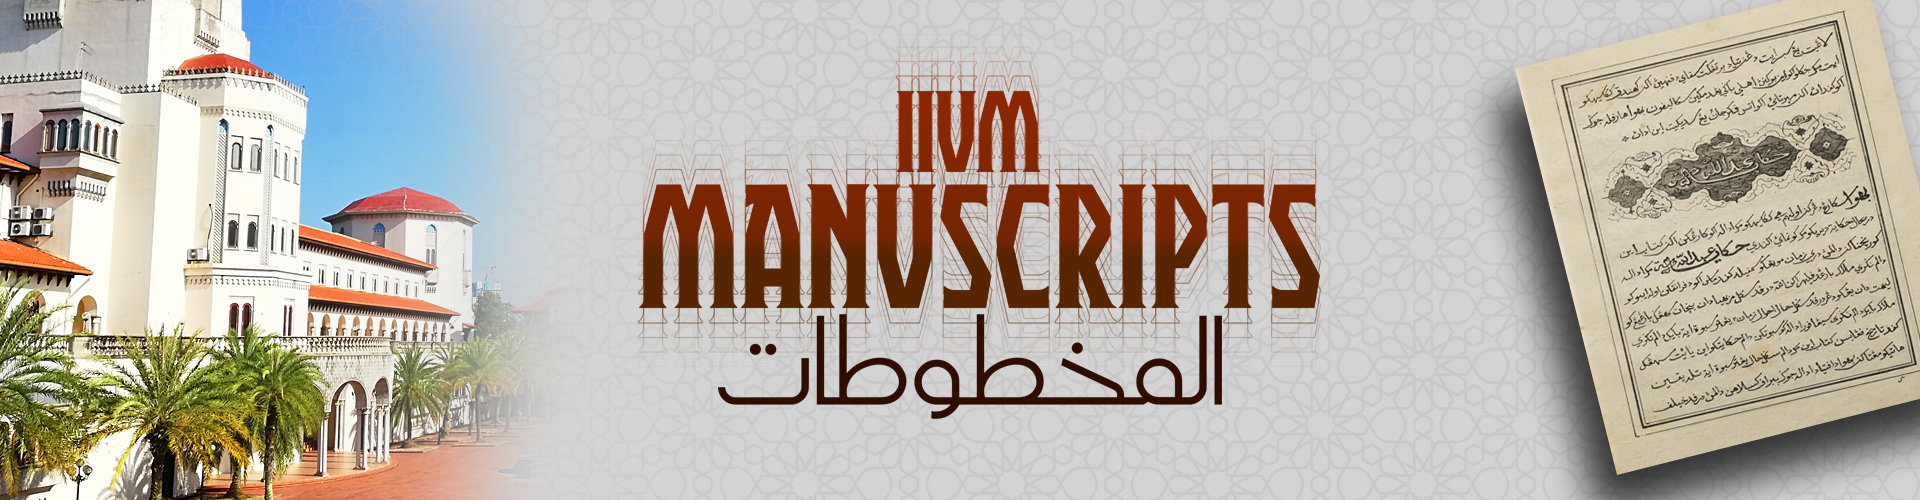 iium-lib-manuscripts